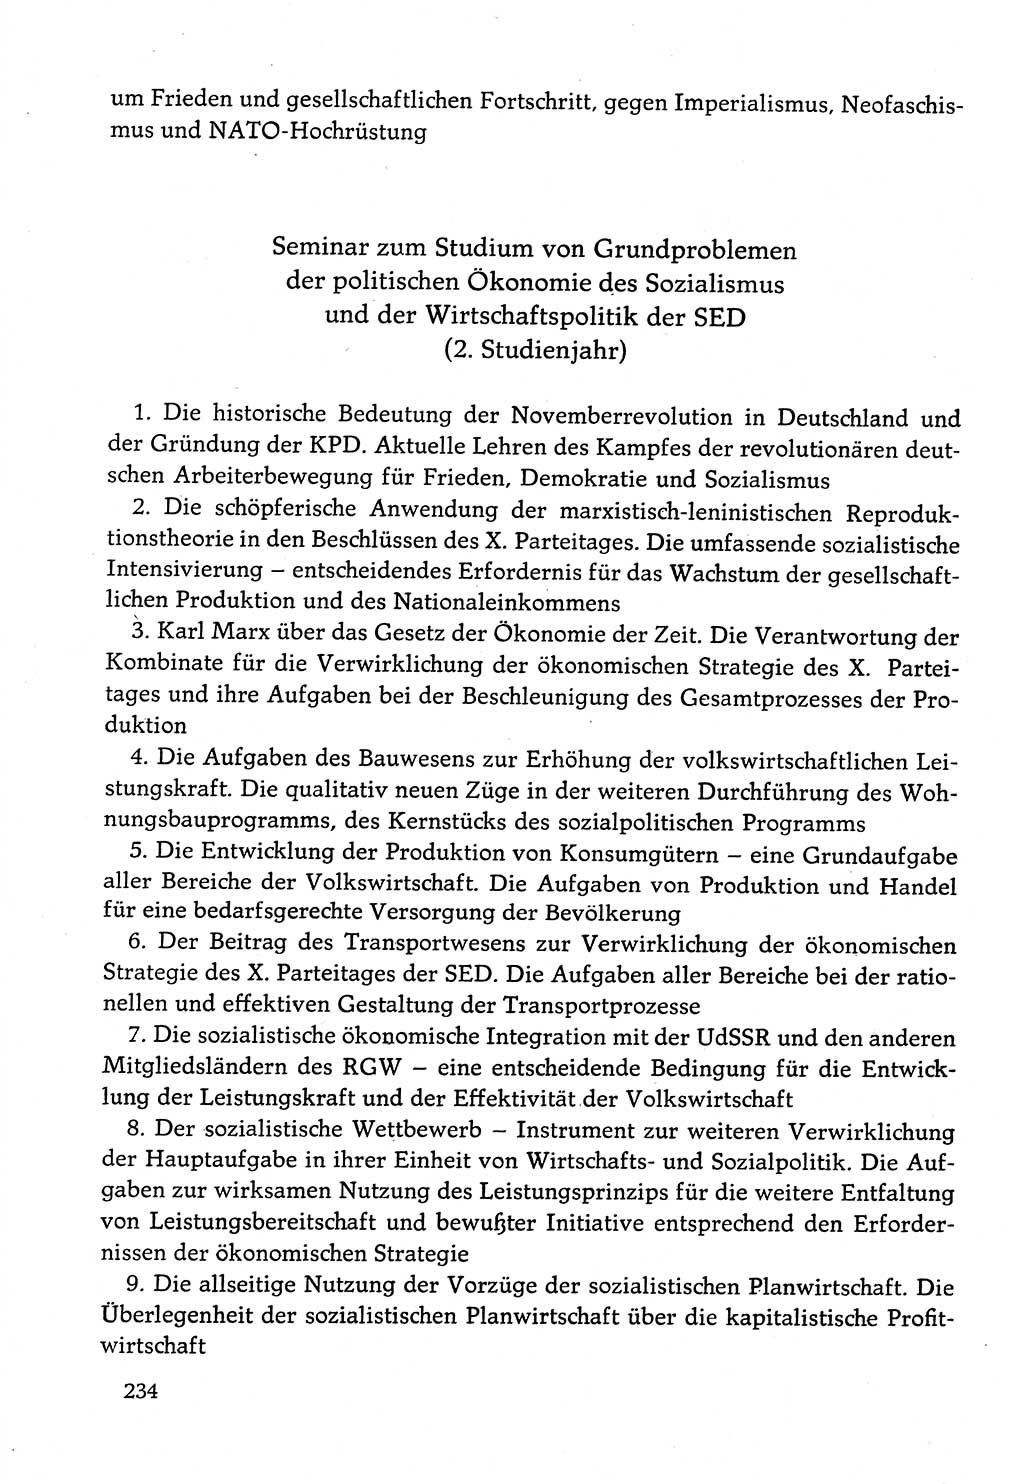 Dokumente der Sozialistischen Einheitspartei Deutschlands (SED) [Deutsche Demokratische Republik (DDR)] 1982-1983, Seite 234 (Dok. SED DDR 1982-1983, S. 234)